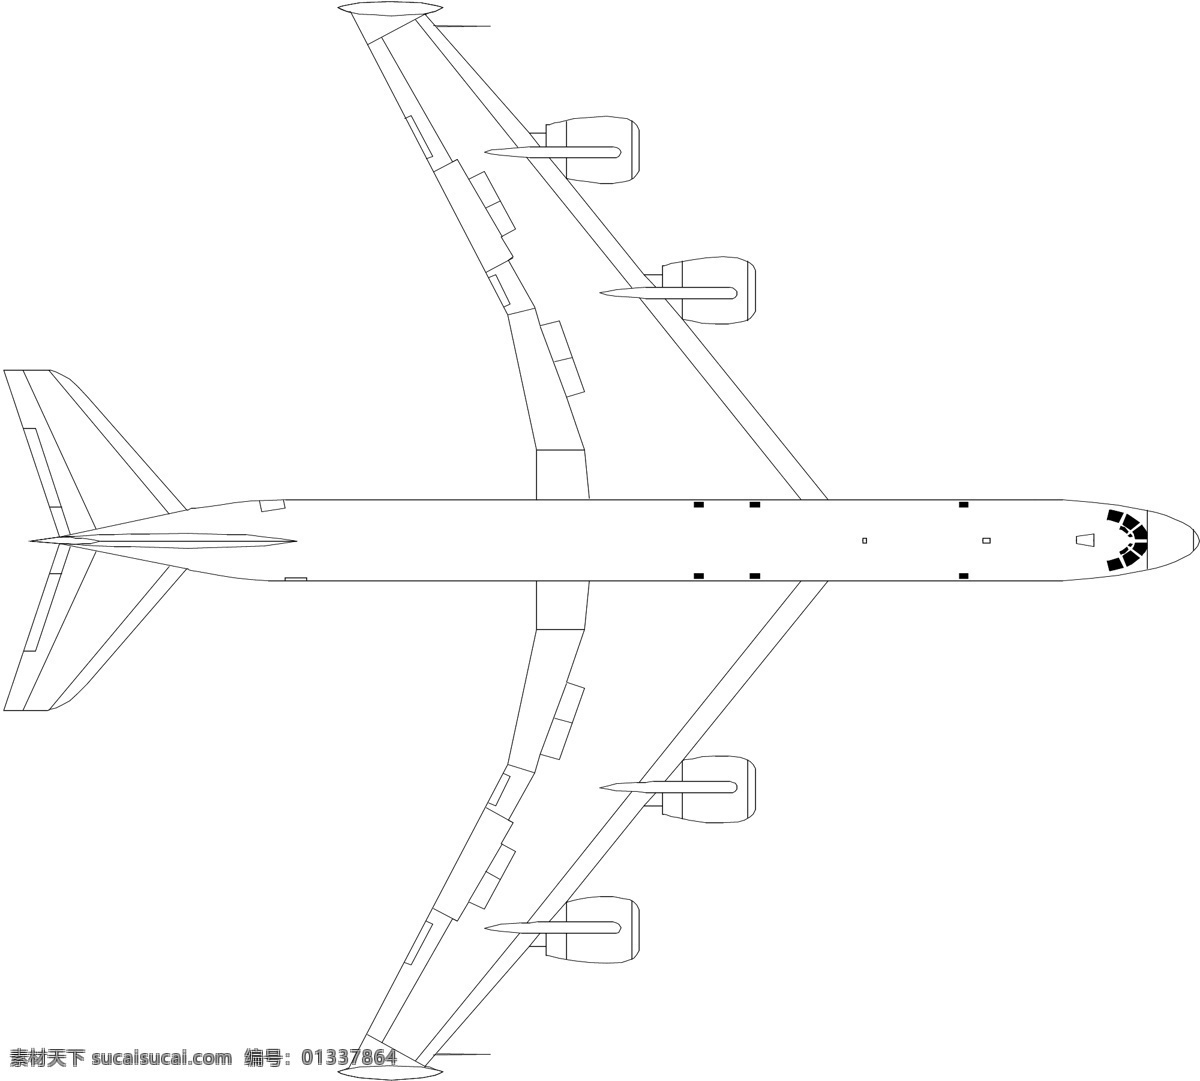 飞机模型 商业矢量 矢量风景建筑 矢量下载 网页矢量 矢量图 其他矢量图